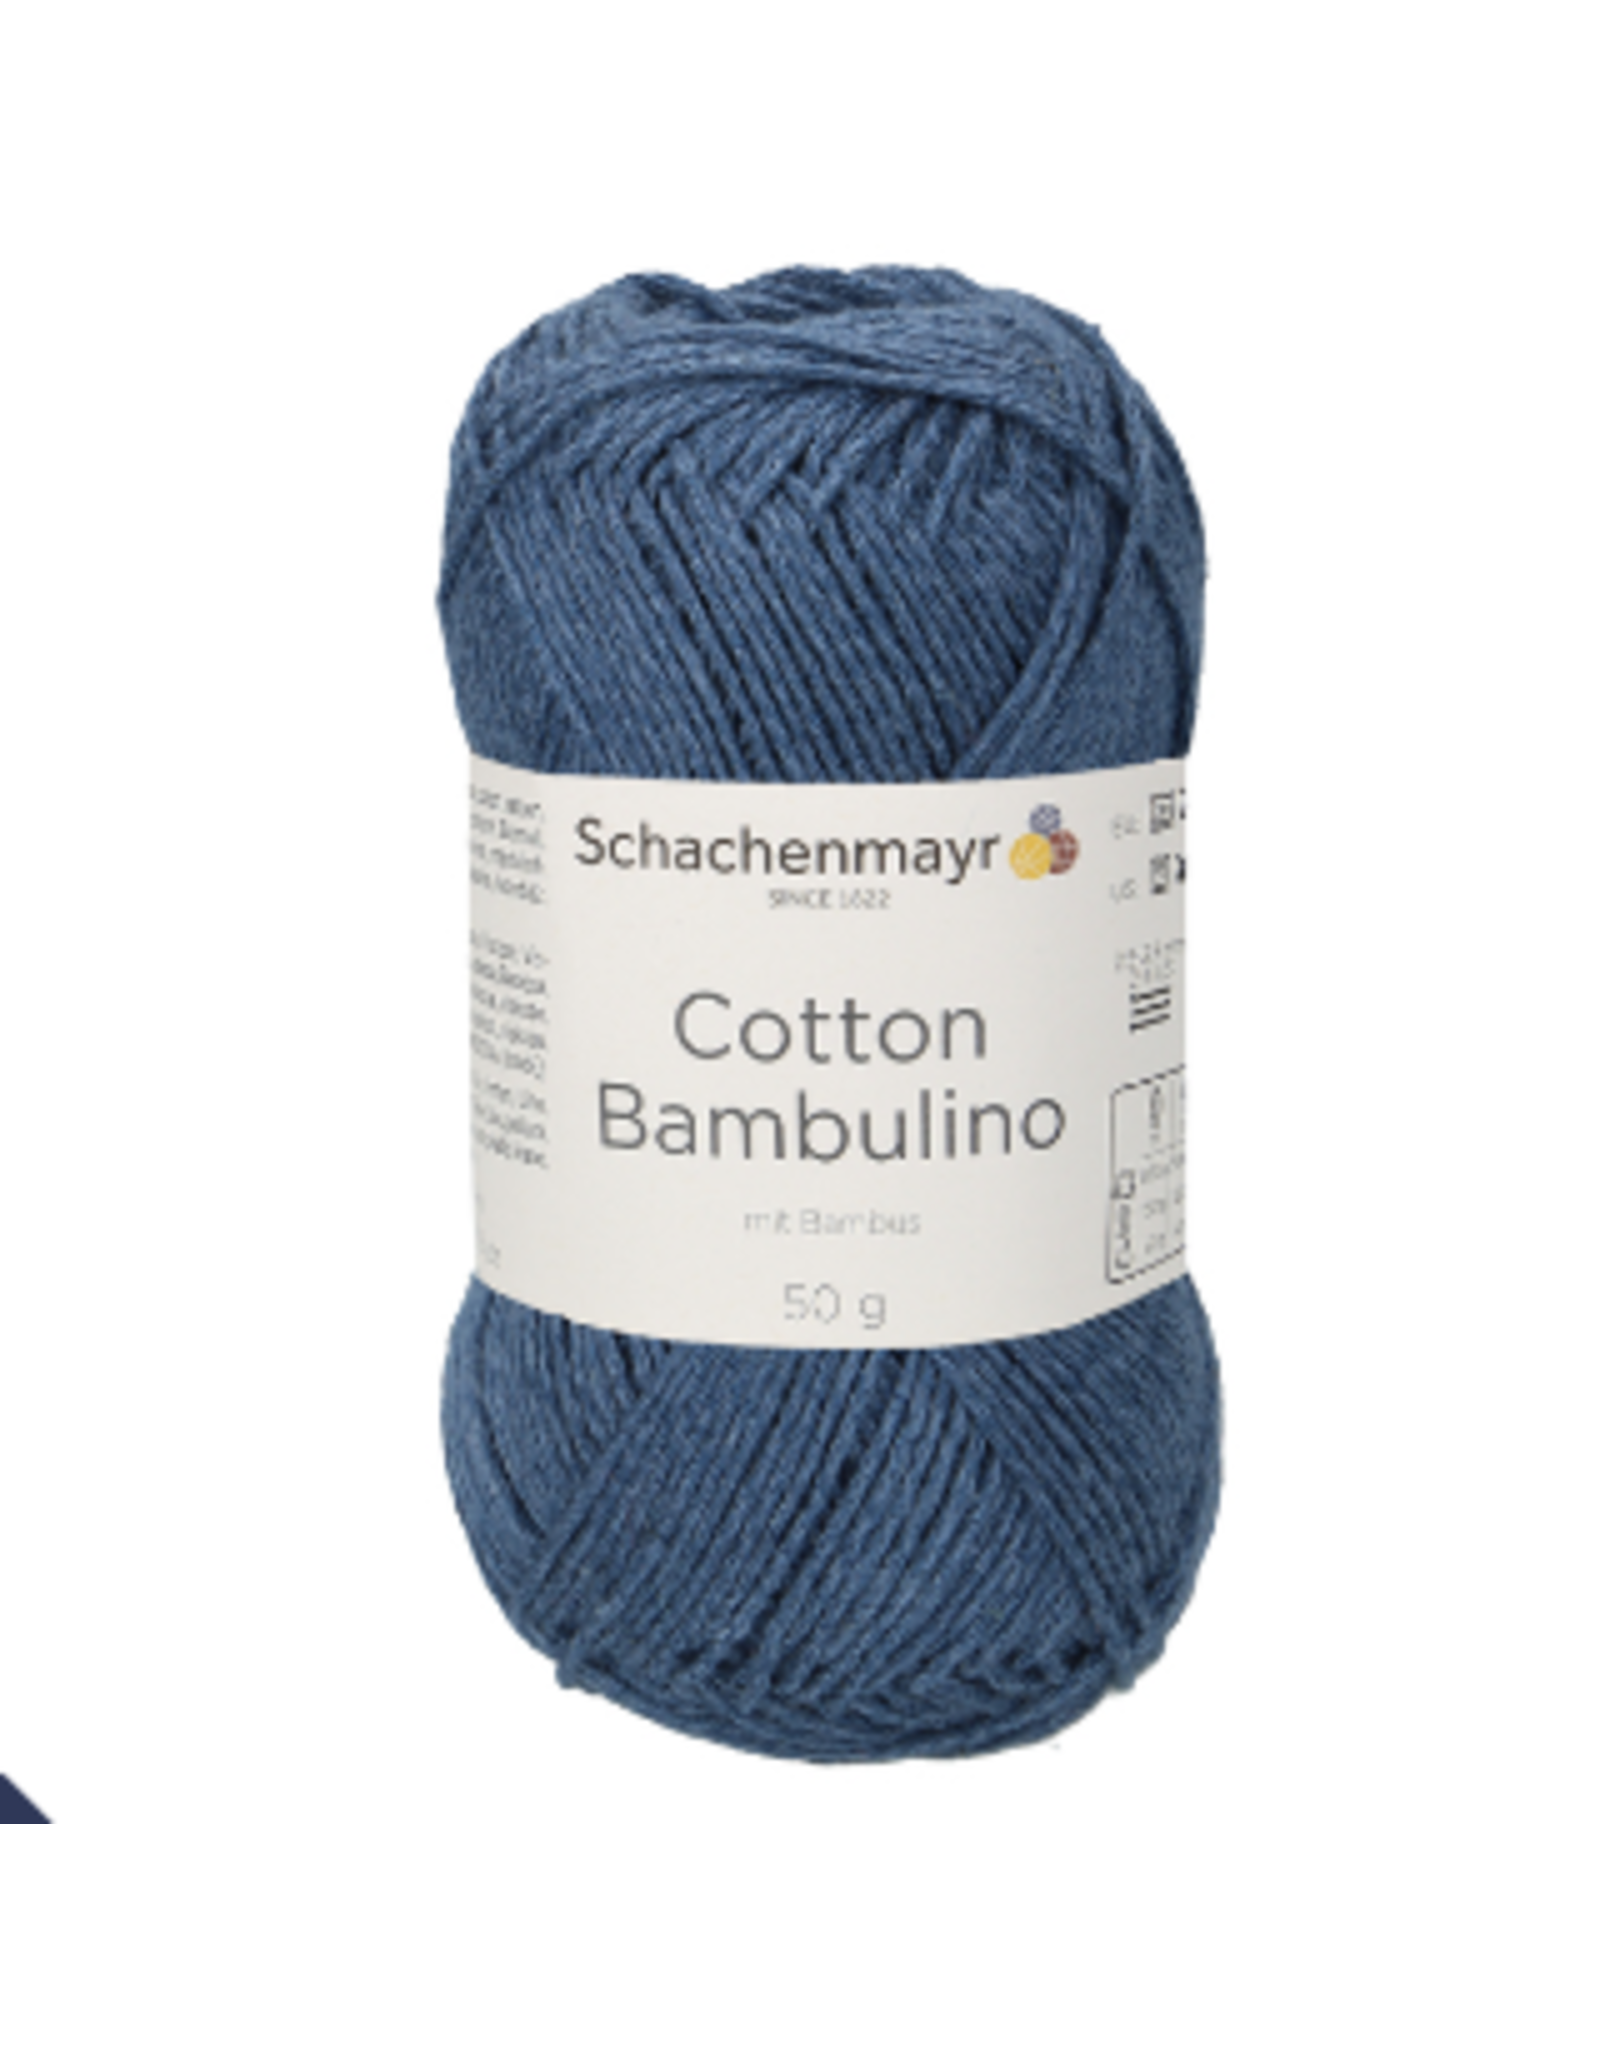 Schachenmayr Schachenmayr Cotton Bambulino 50